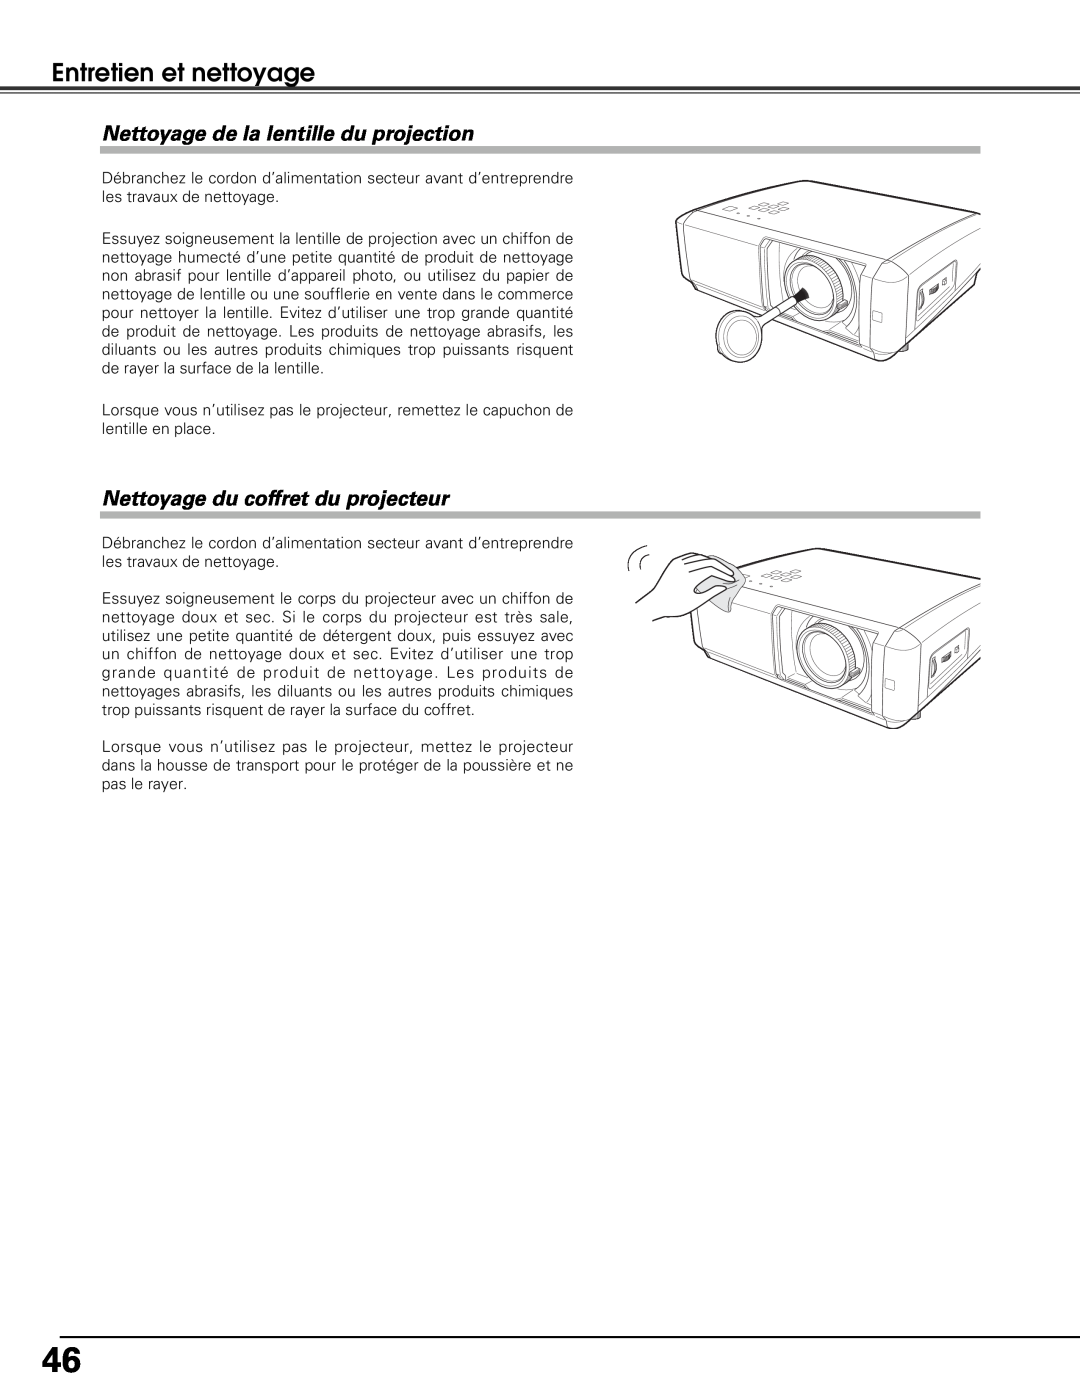 Sanyo PLV-Z5BK manual Nettoyage de la lentille du projection, Nettoyage du coffret du projecteur, Entretien et nettoyage 